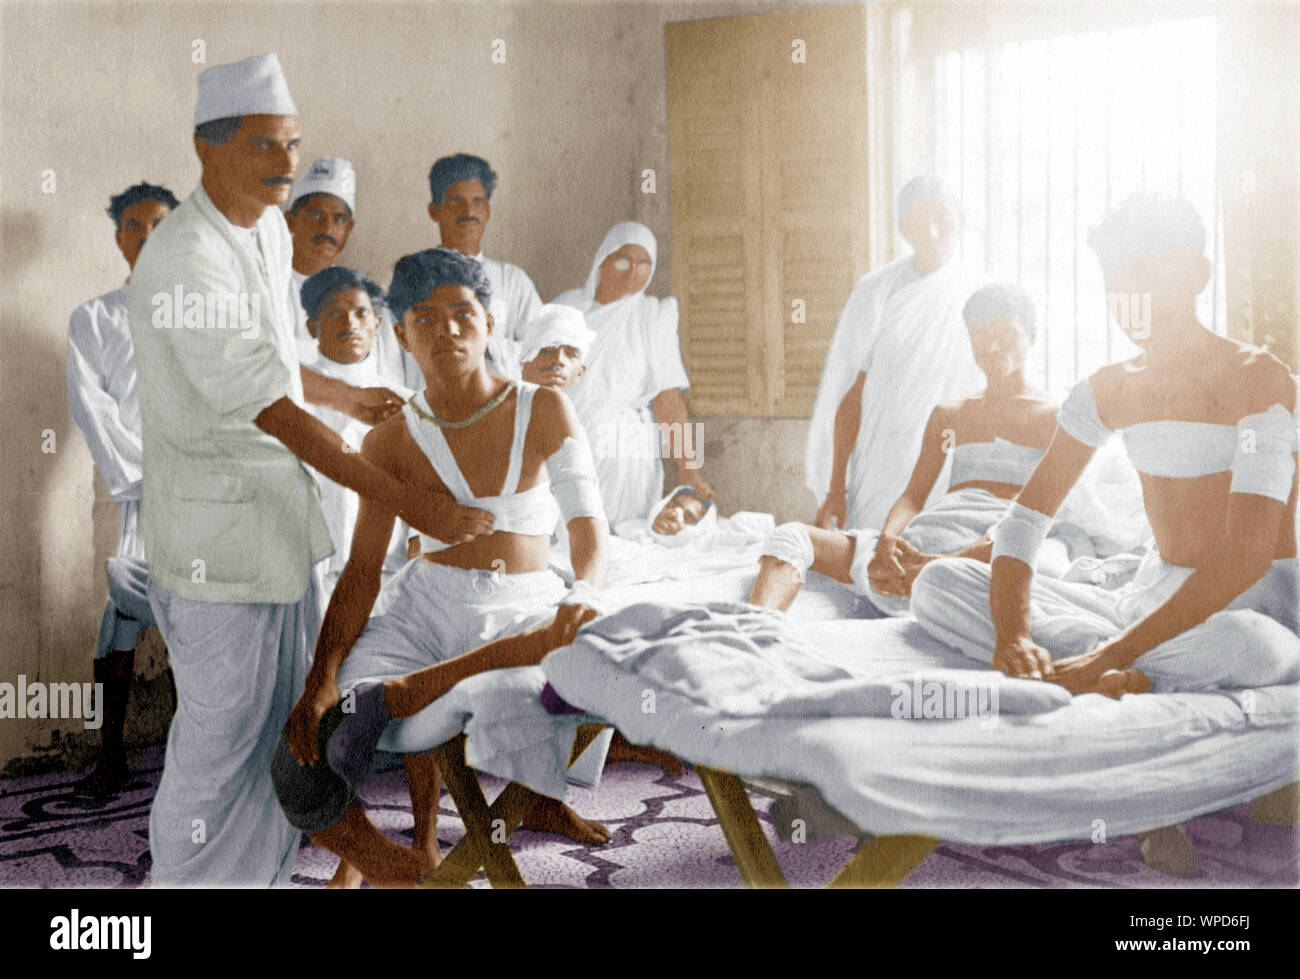 Verletzte Satyagrahi wird an der erste-Hilfe-Station bandagiert, Salz-Satyagramm, Dandi-marsch, Salz-marsch, Dandi, Indien, Asien, Mai 1930, alter Jahrgang 1900er Stockfoto